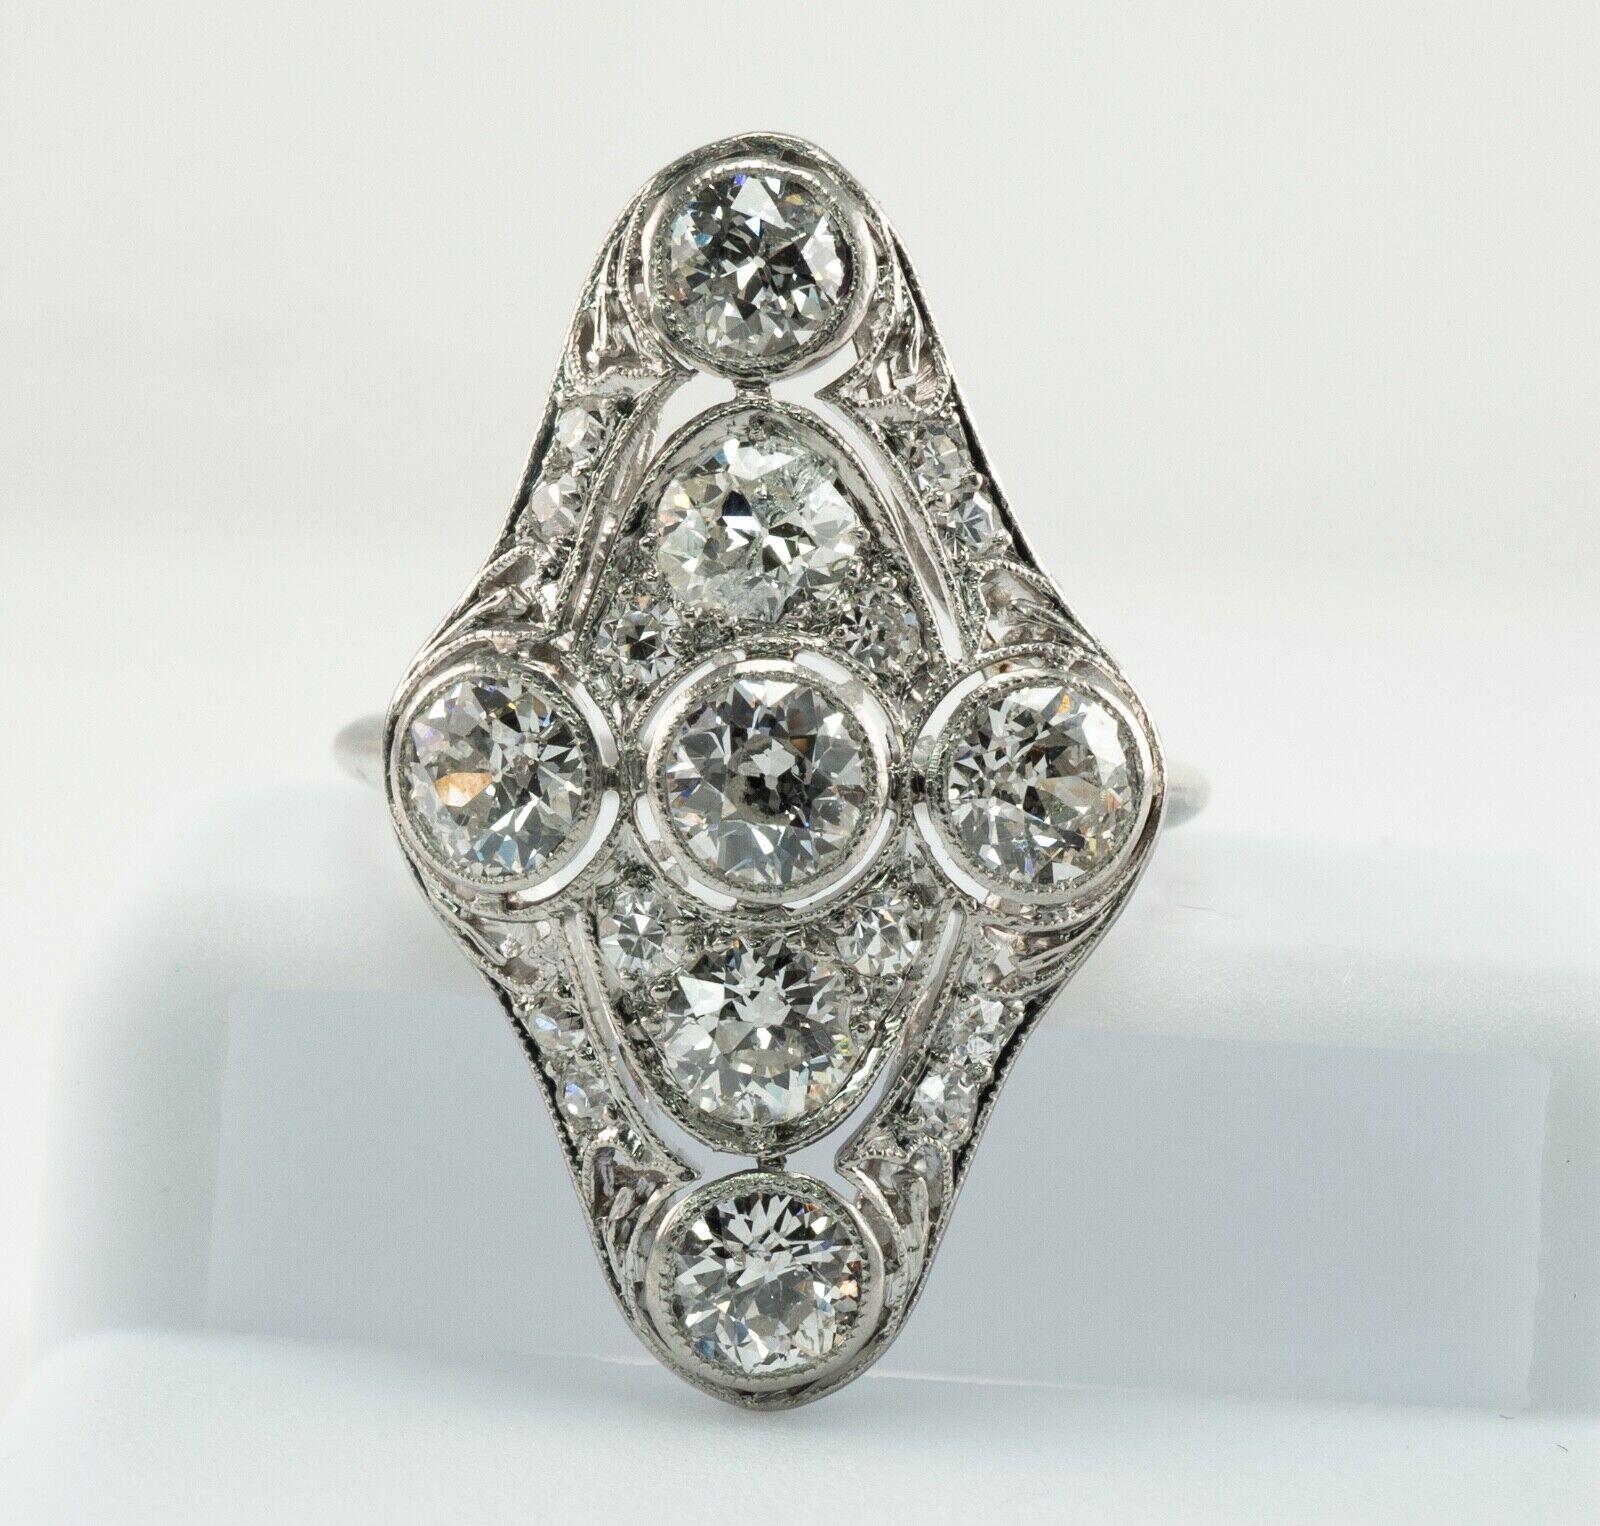 Dieser wunderschöne antike Ring aus der Edwardianischen Ära ist fein aus massivem Platin gefertigt.
Der Ring ist sorgfältig geprüft und garantiert. 
Der Ring ist mit 19 natürlichen Diamanten aus alten Minen von insgesamt 2,06 Karat (.03ct - bis .30